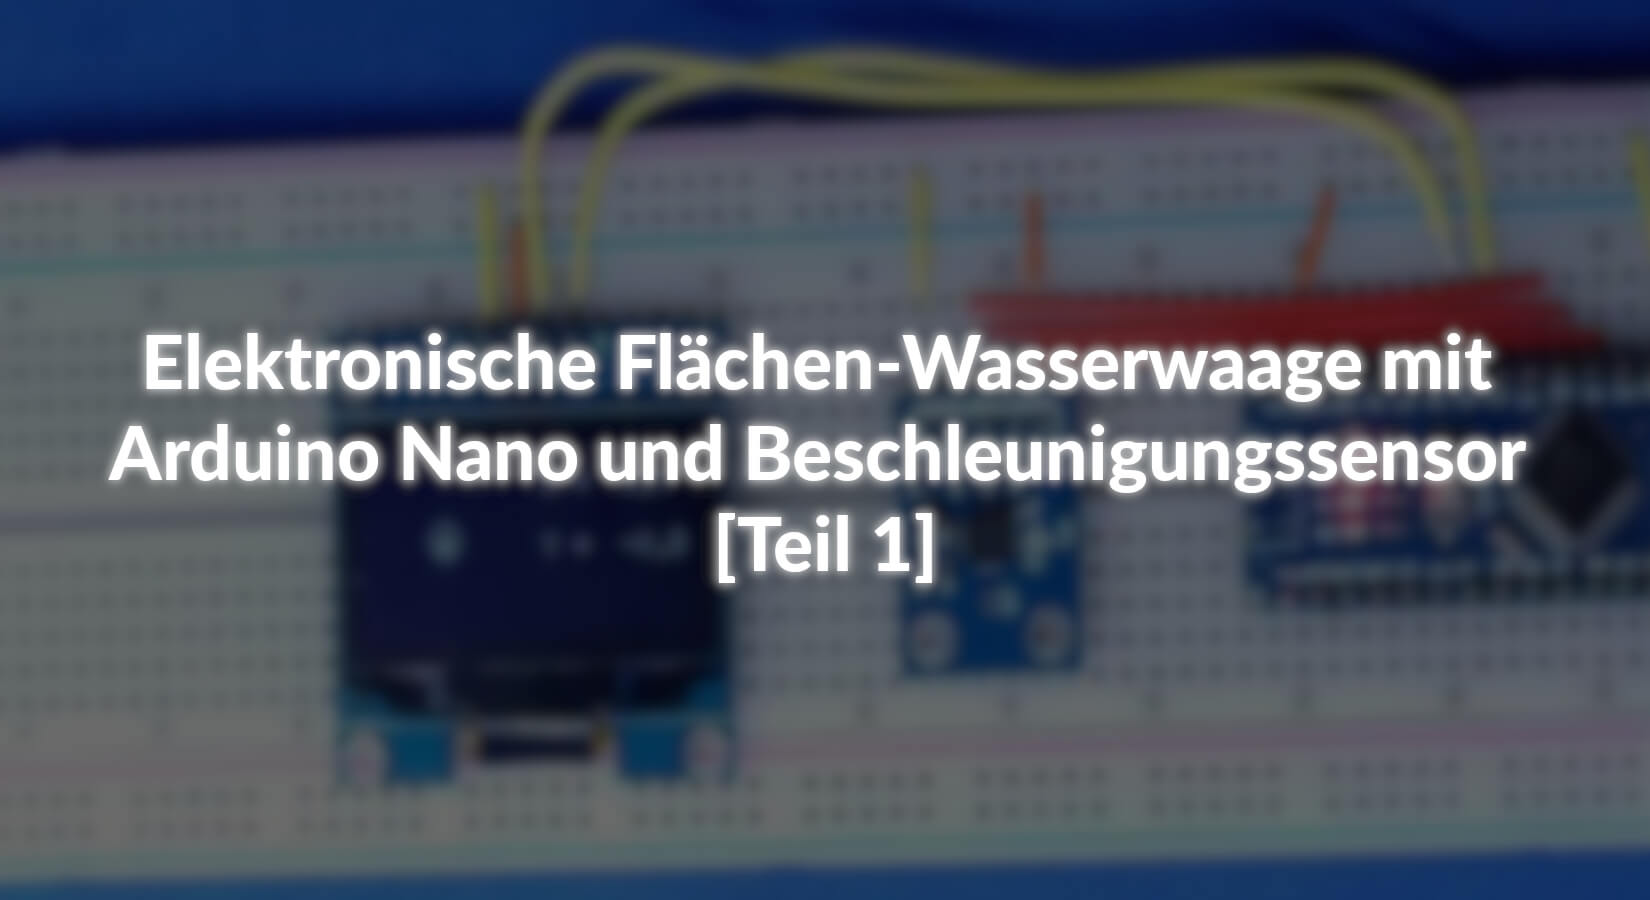 Elektronische Flächen-Wasserwaage mit Arduino Nano und Beschleunigungssensor - [Teil 1] - AZ-Delivery